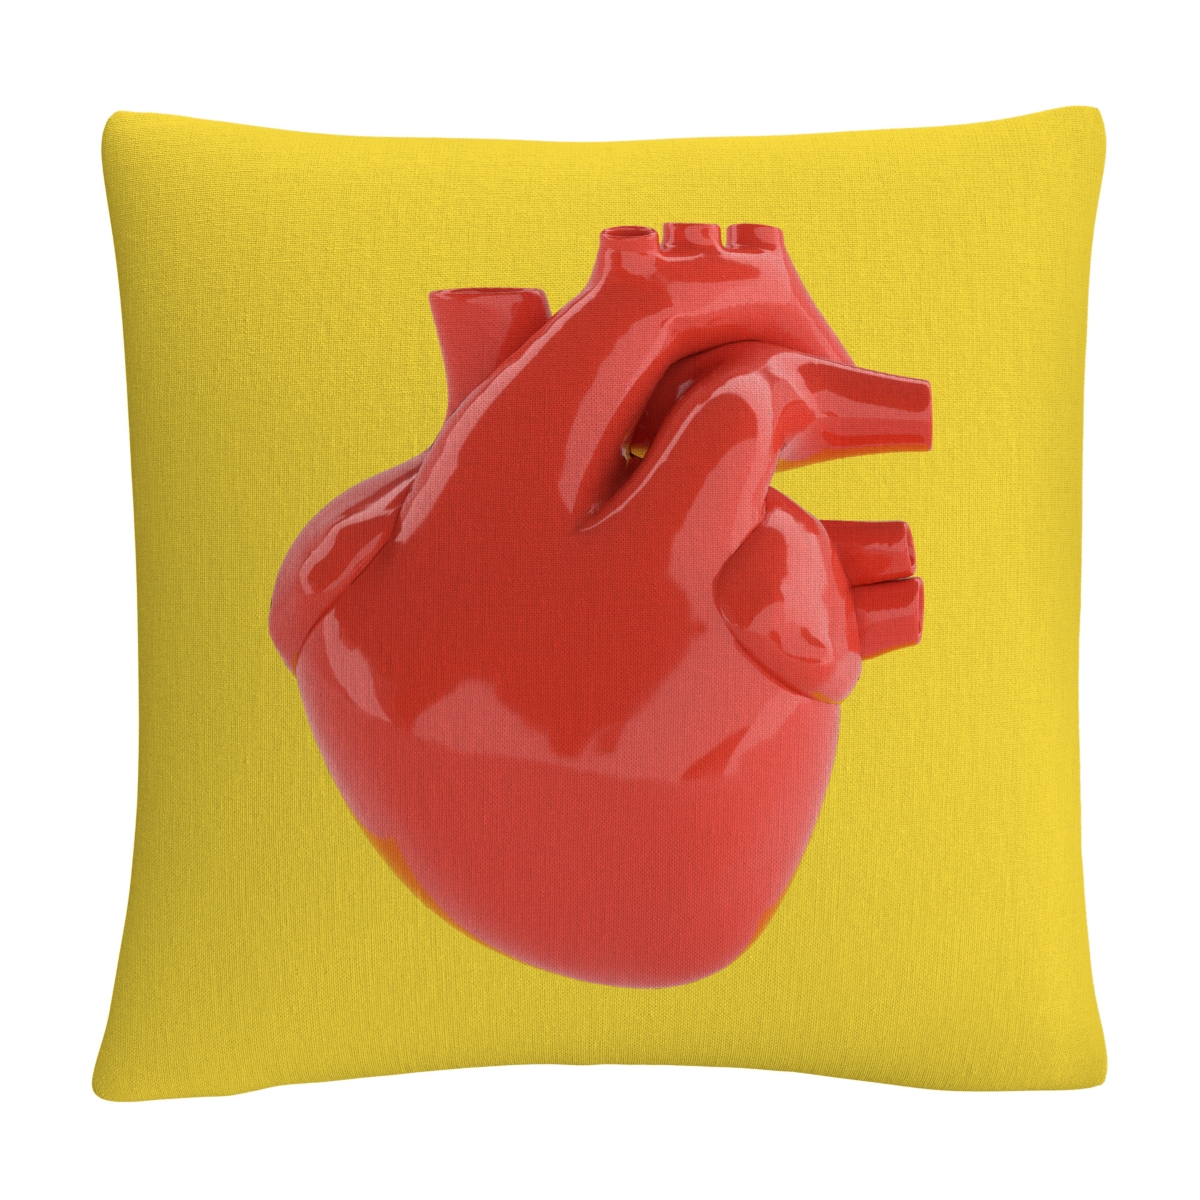 Abc Modern 3D Red Heart Decorative Pillow, 16 x 16